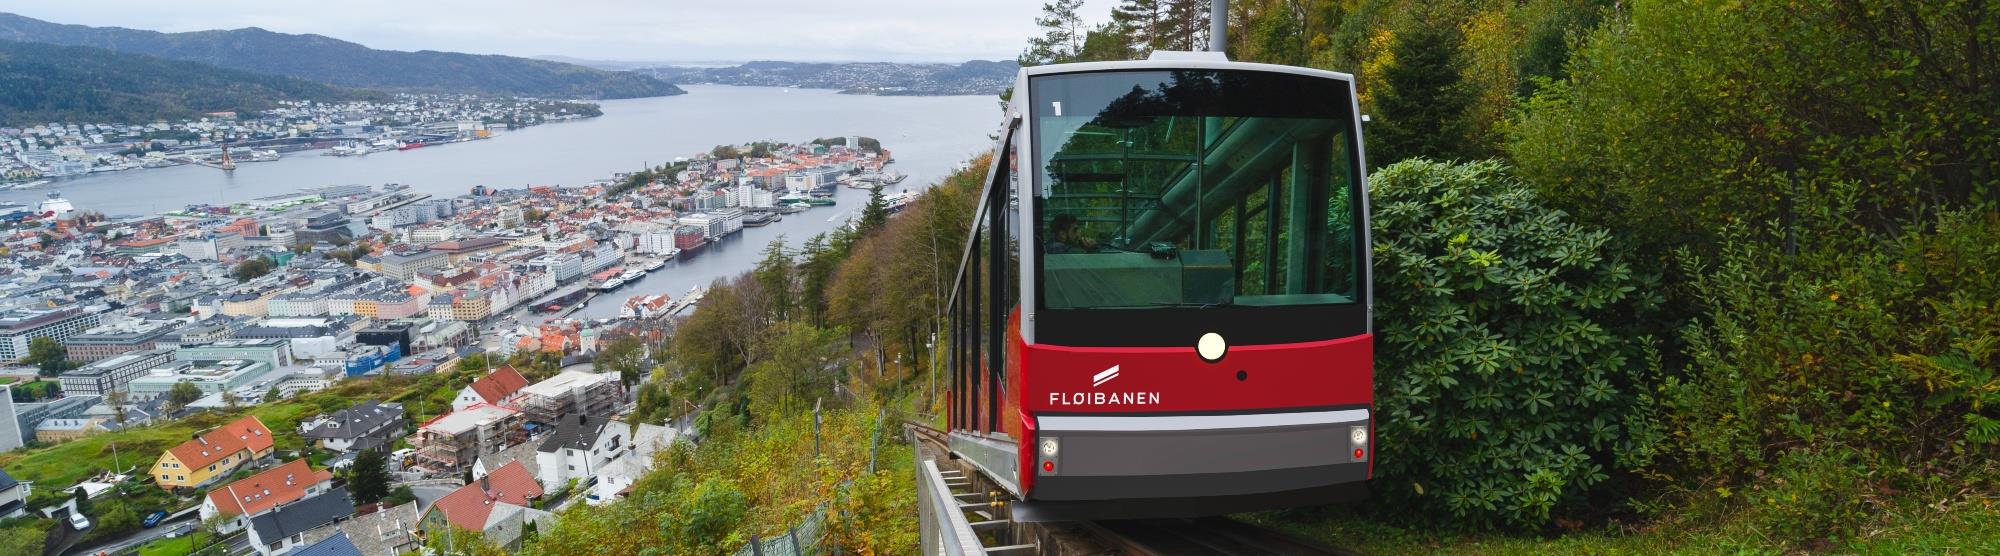 Attractions in Bergen